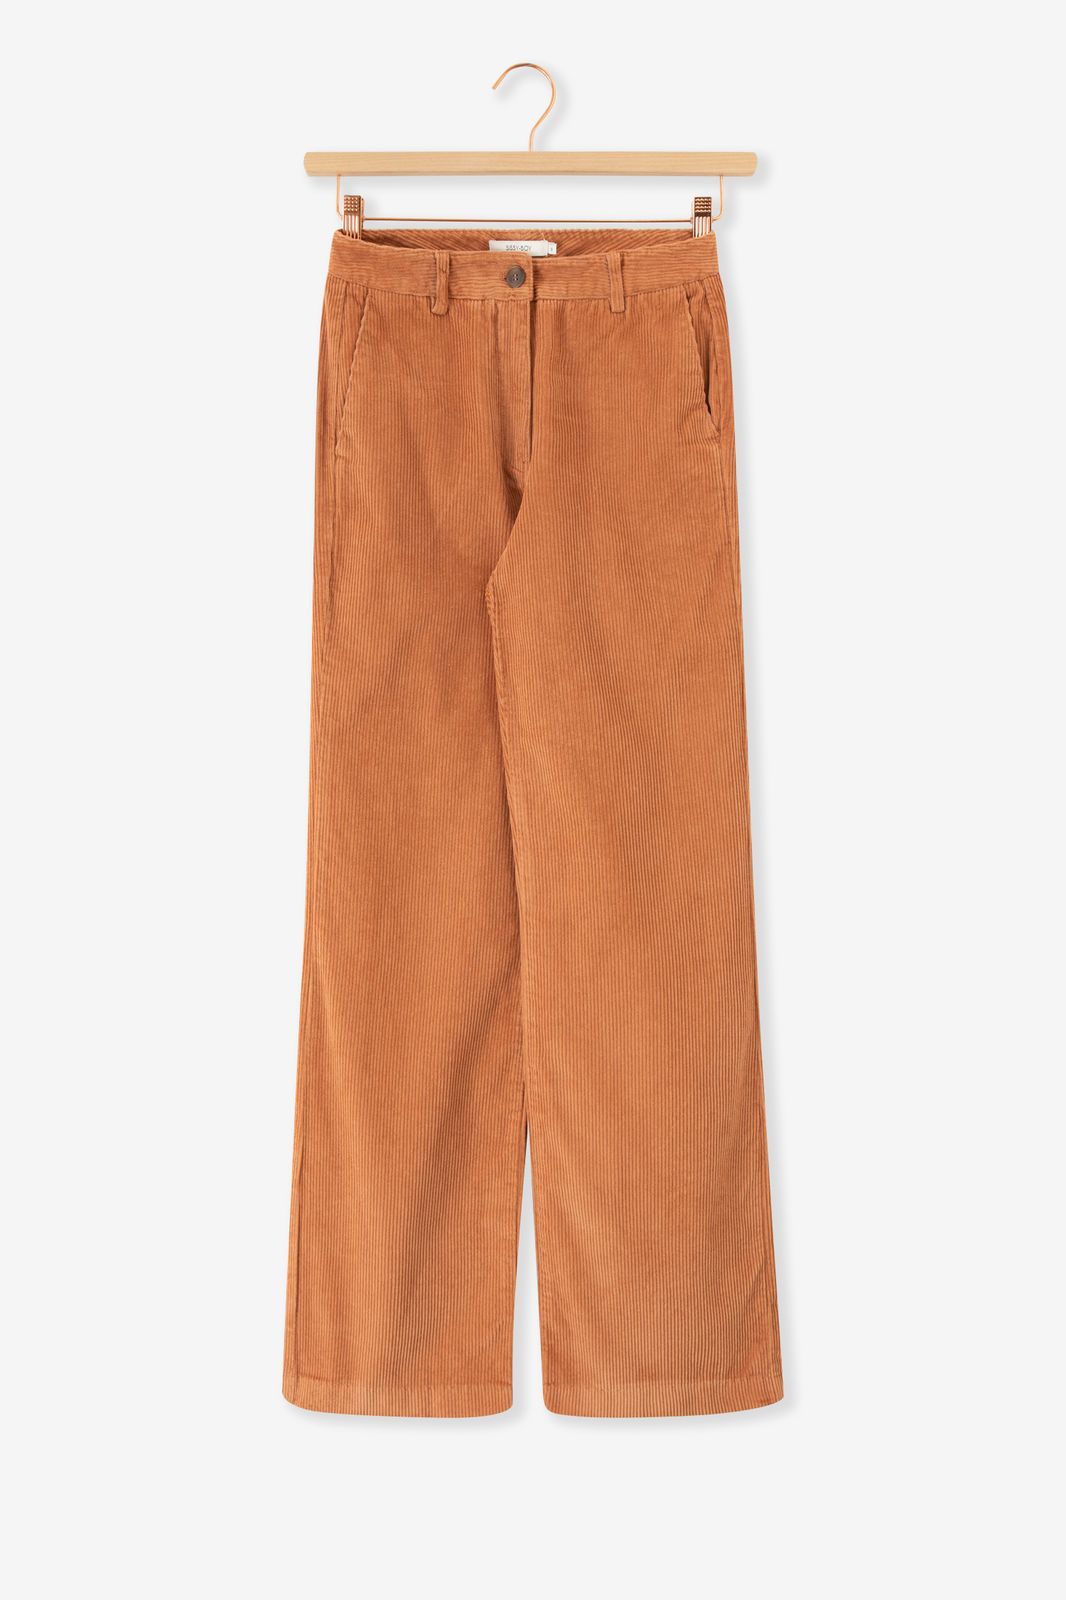 Pantalon jambes larges en velours côtelé - marron clair